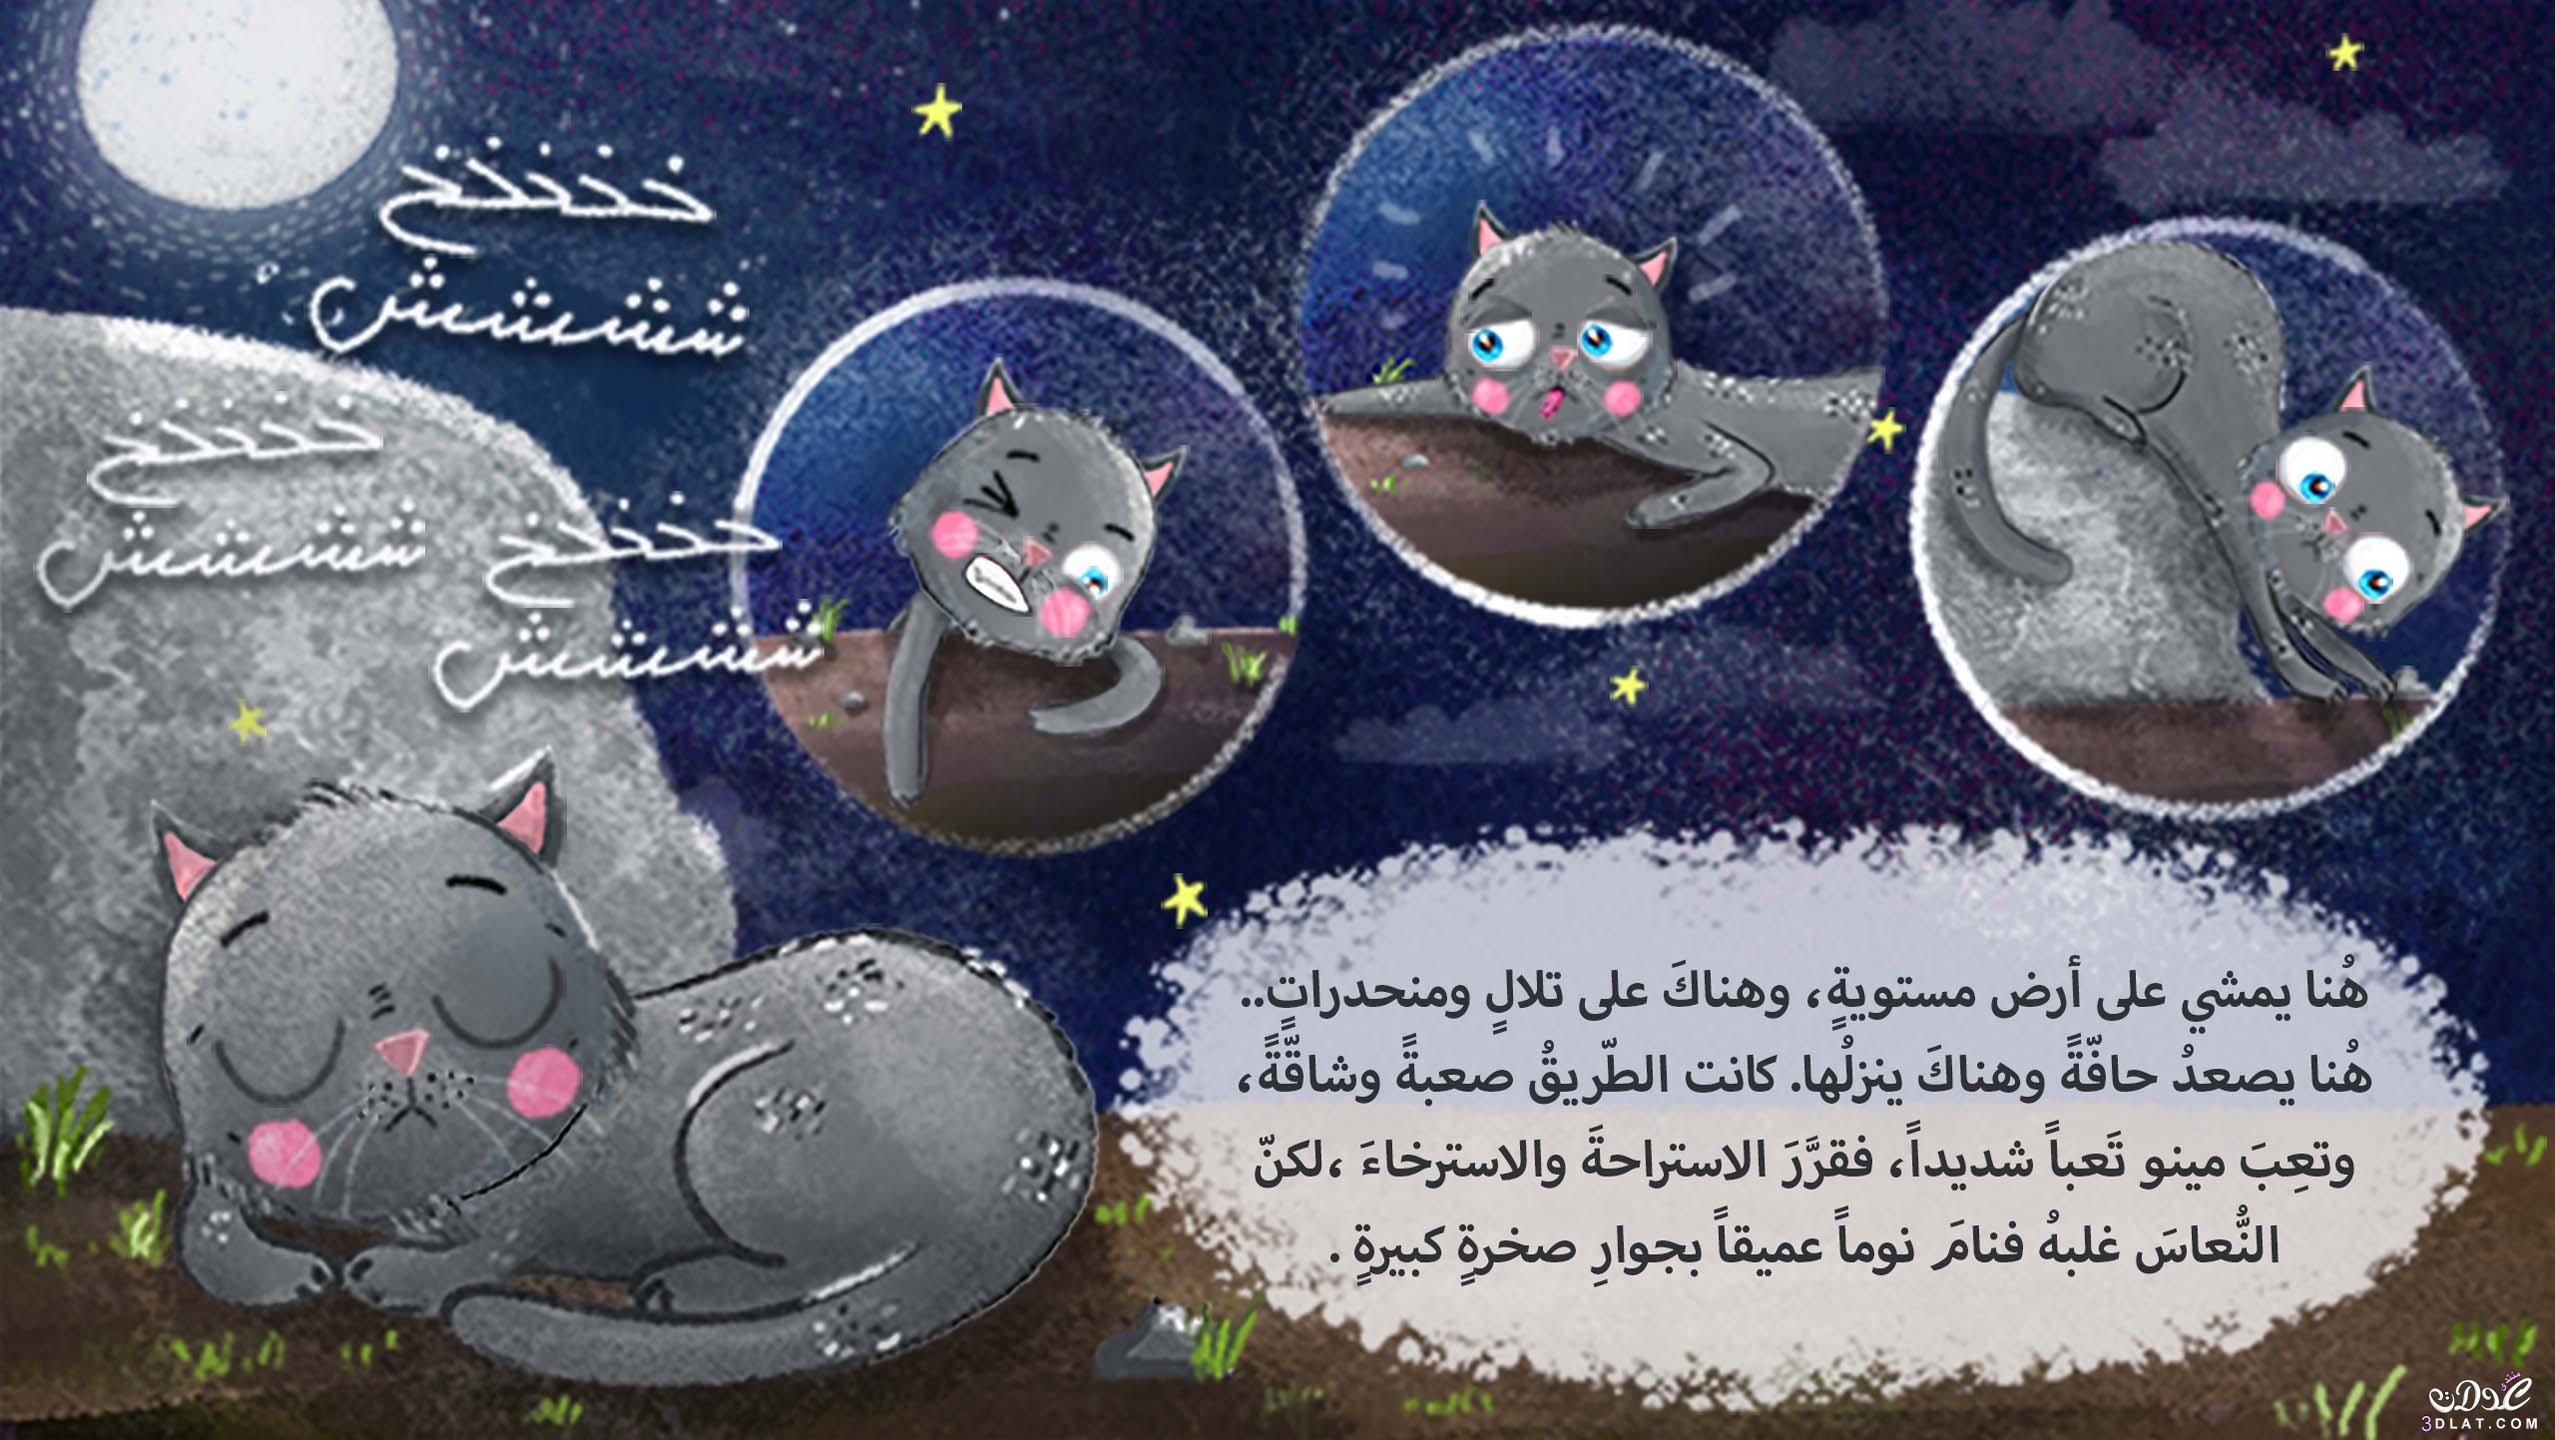 قصة مينو و القمر , قصة رائعة للاطفال , اروع القصص المصورة للاطفال